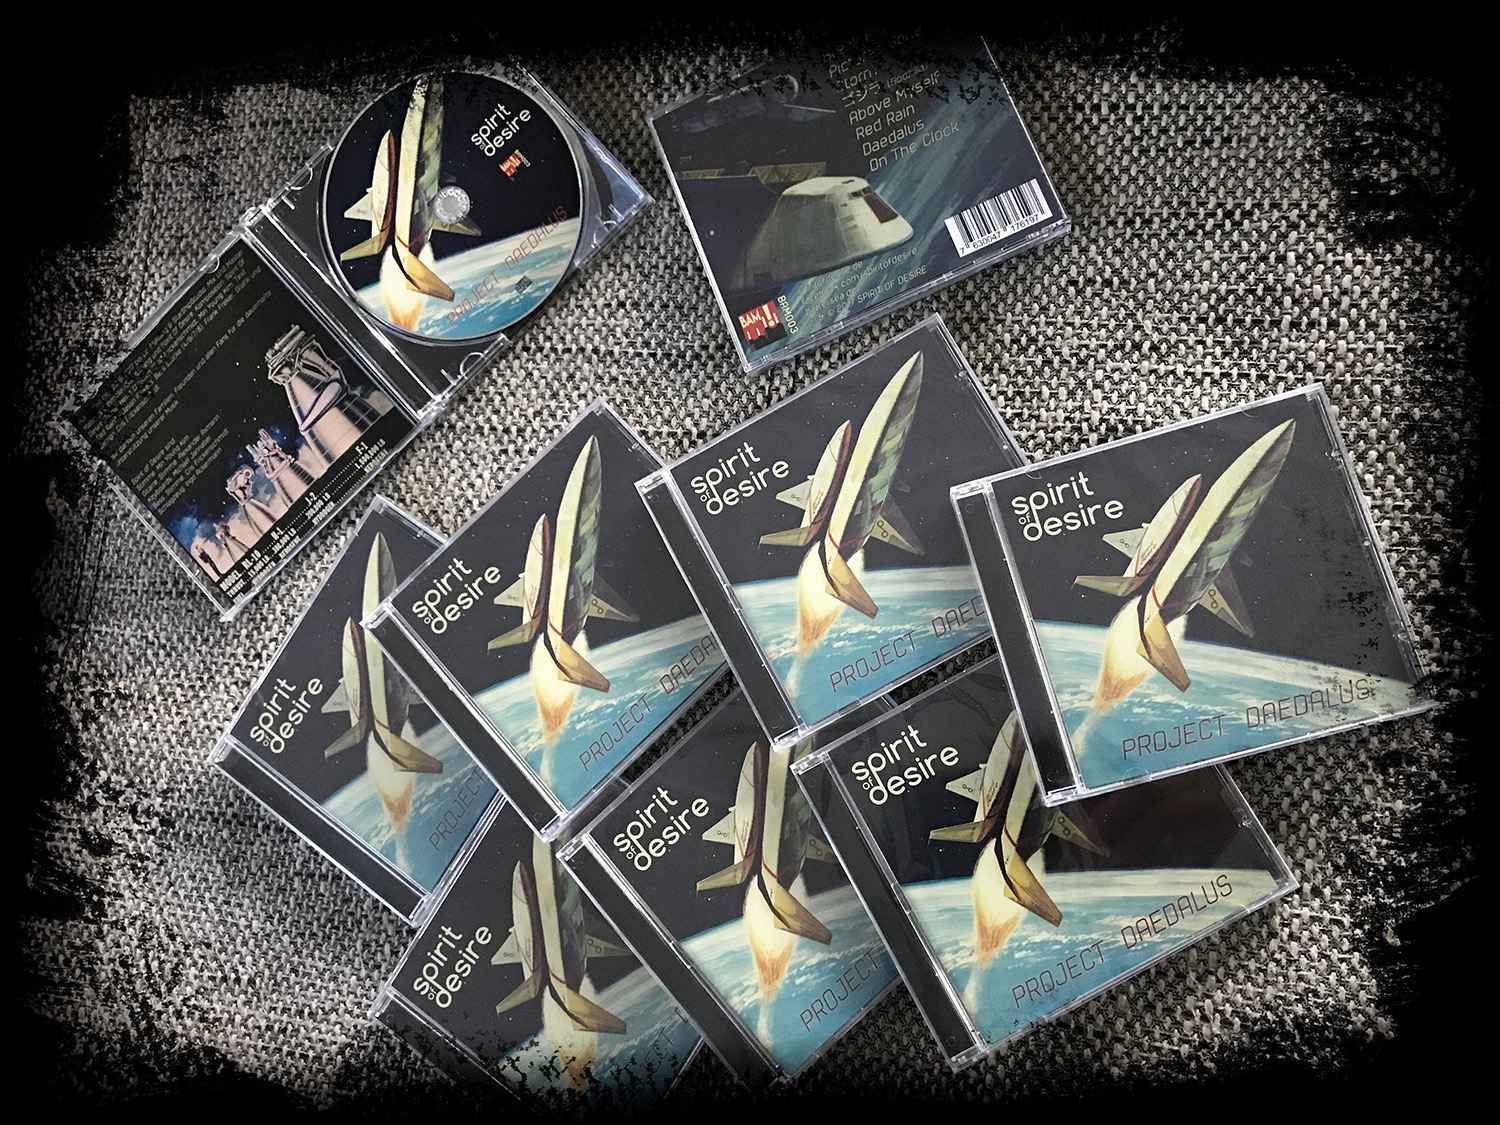 Project Daedalus ist gelandet – Promo CDs jetzt verfügbar!